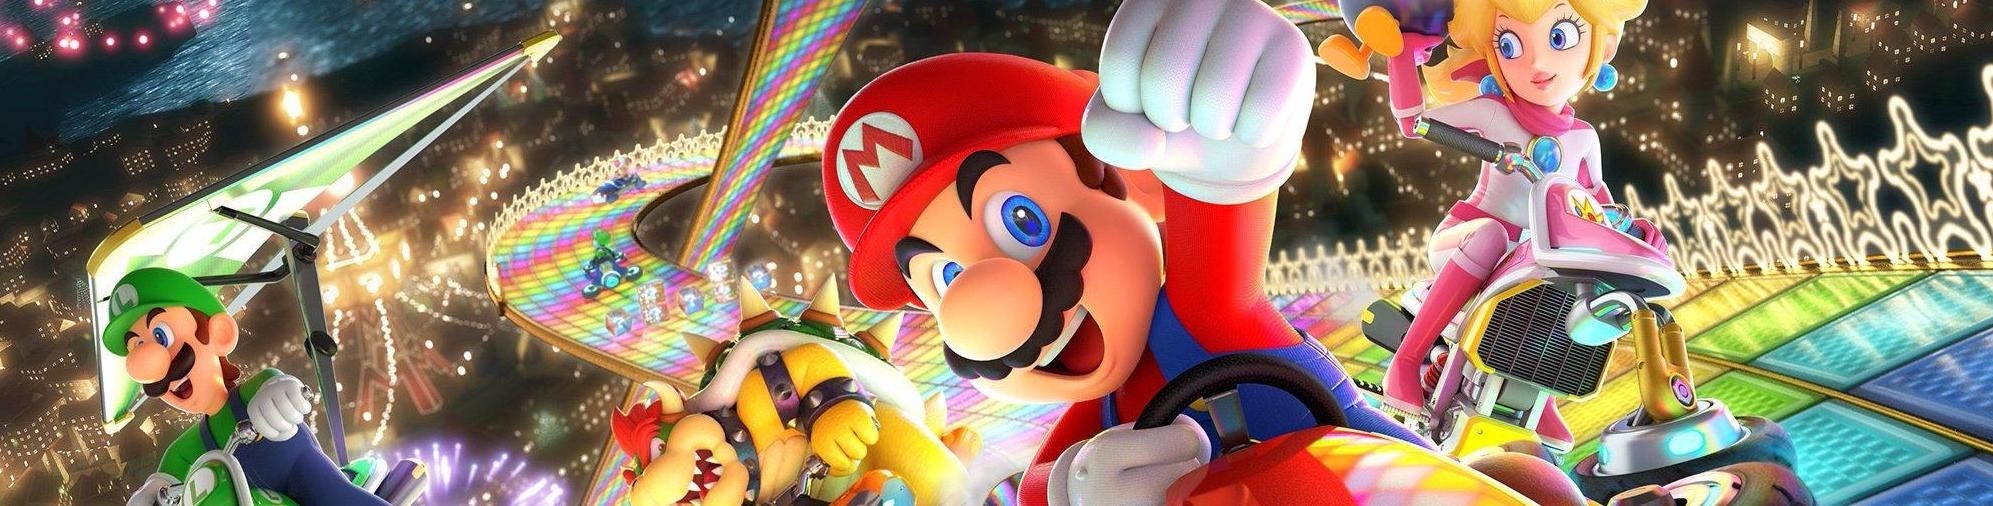 Obrazki dla Mario Kart 8 Deluxe: świetna gra konsolowa jest przenośną rewelacją